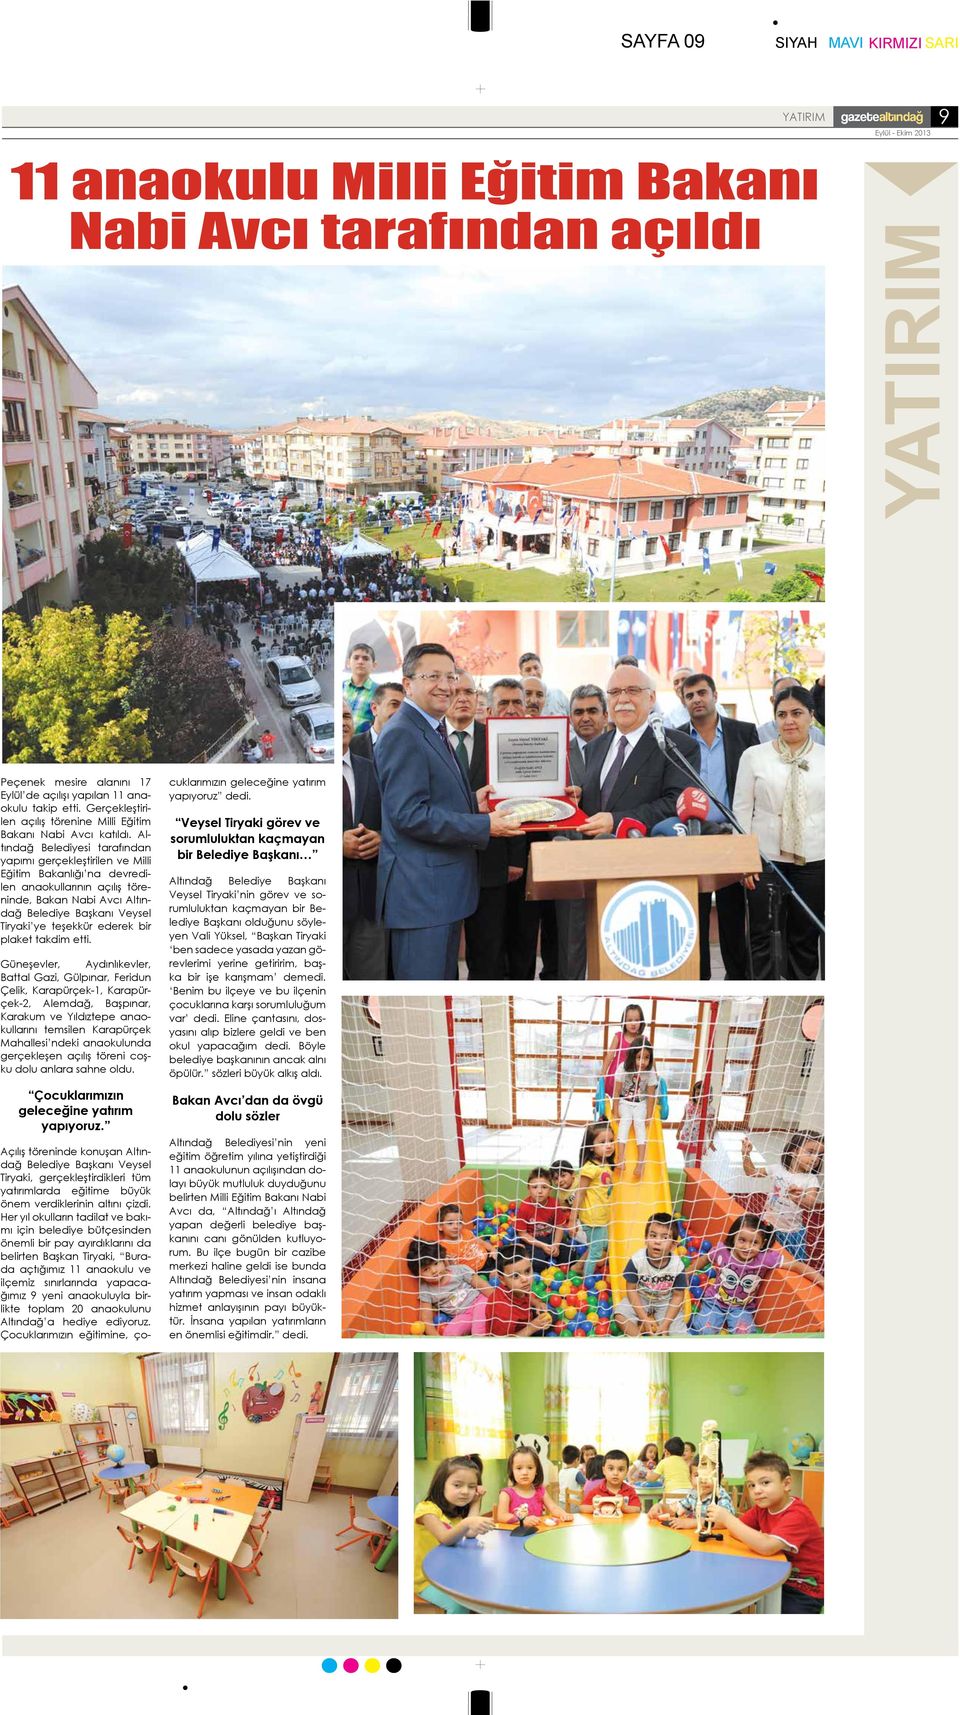 Altındağ Belediyesi tarafından yapımı gerçekleştirilen ve Milli Eğitim Bakanlığı na devredilen anaokullarının açılış töreninde, Bakan Nabi Avcı Altındağ Belediye Başkanı Veysel Tiryaki ye teşekkür